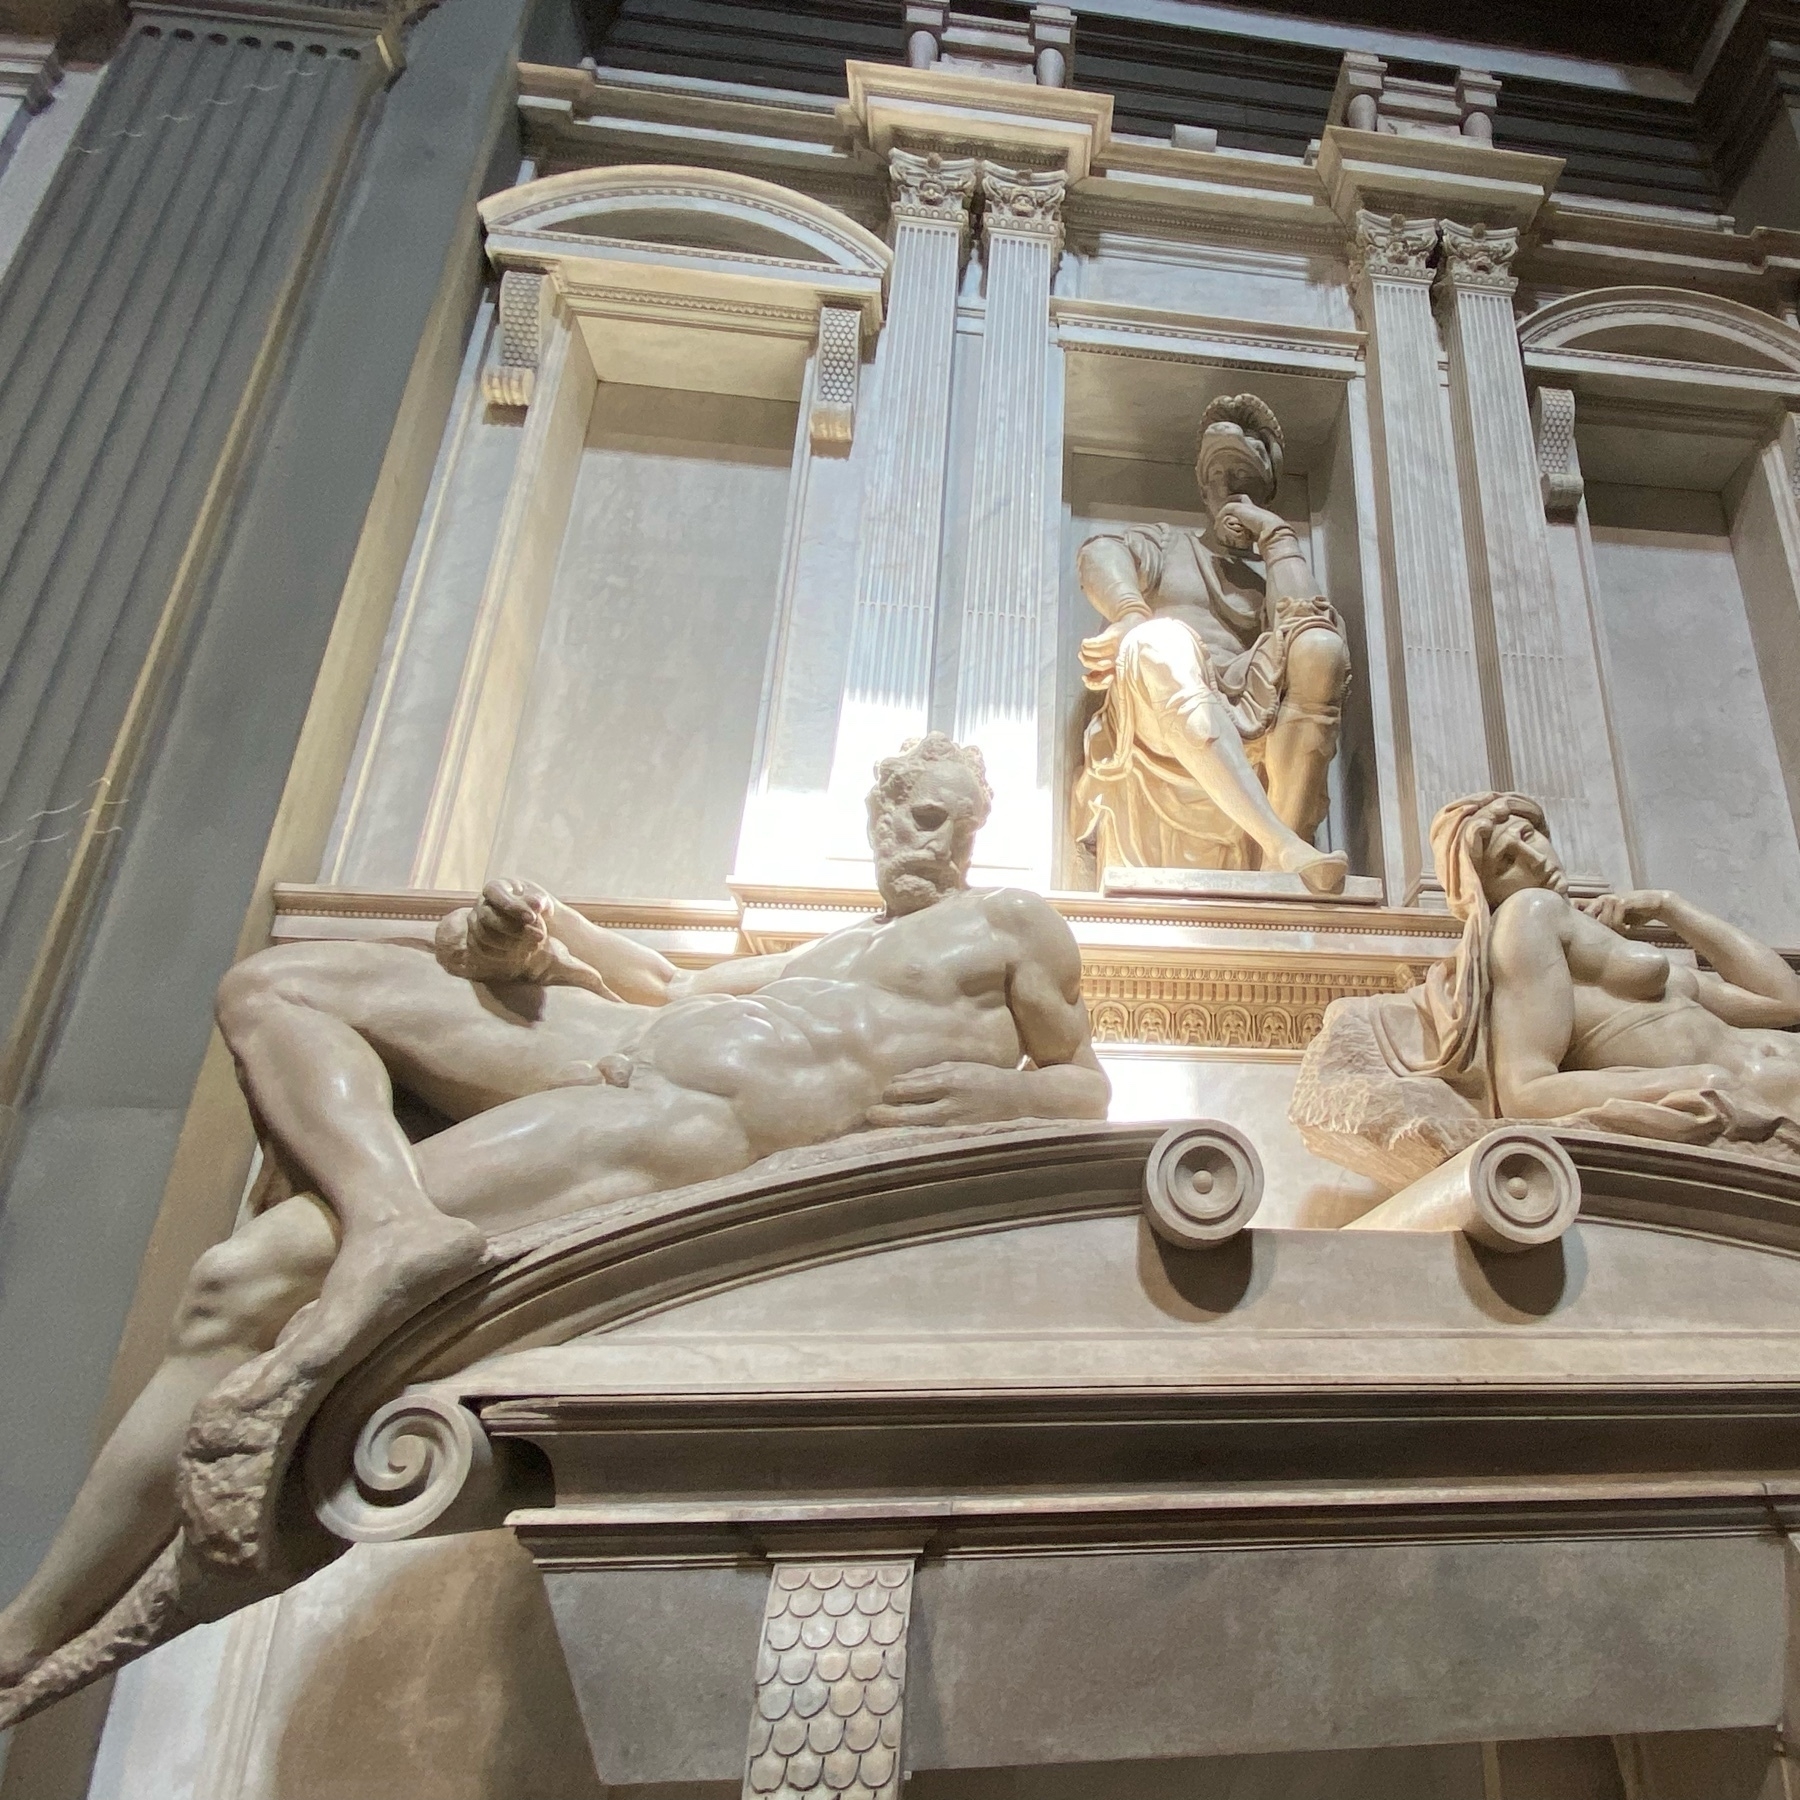 medici chapel, sculptures by Michaelangelo